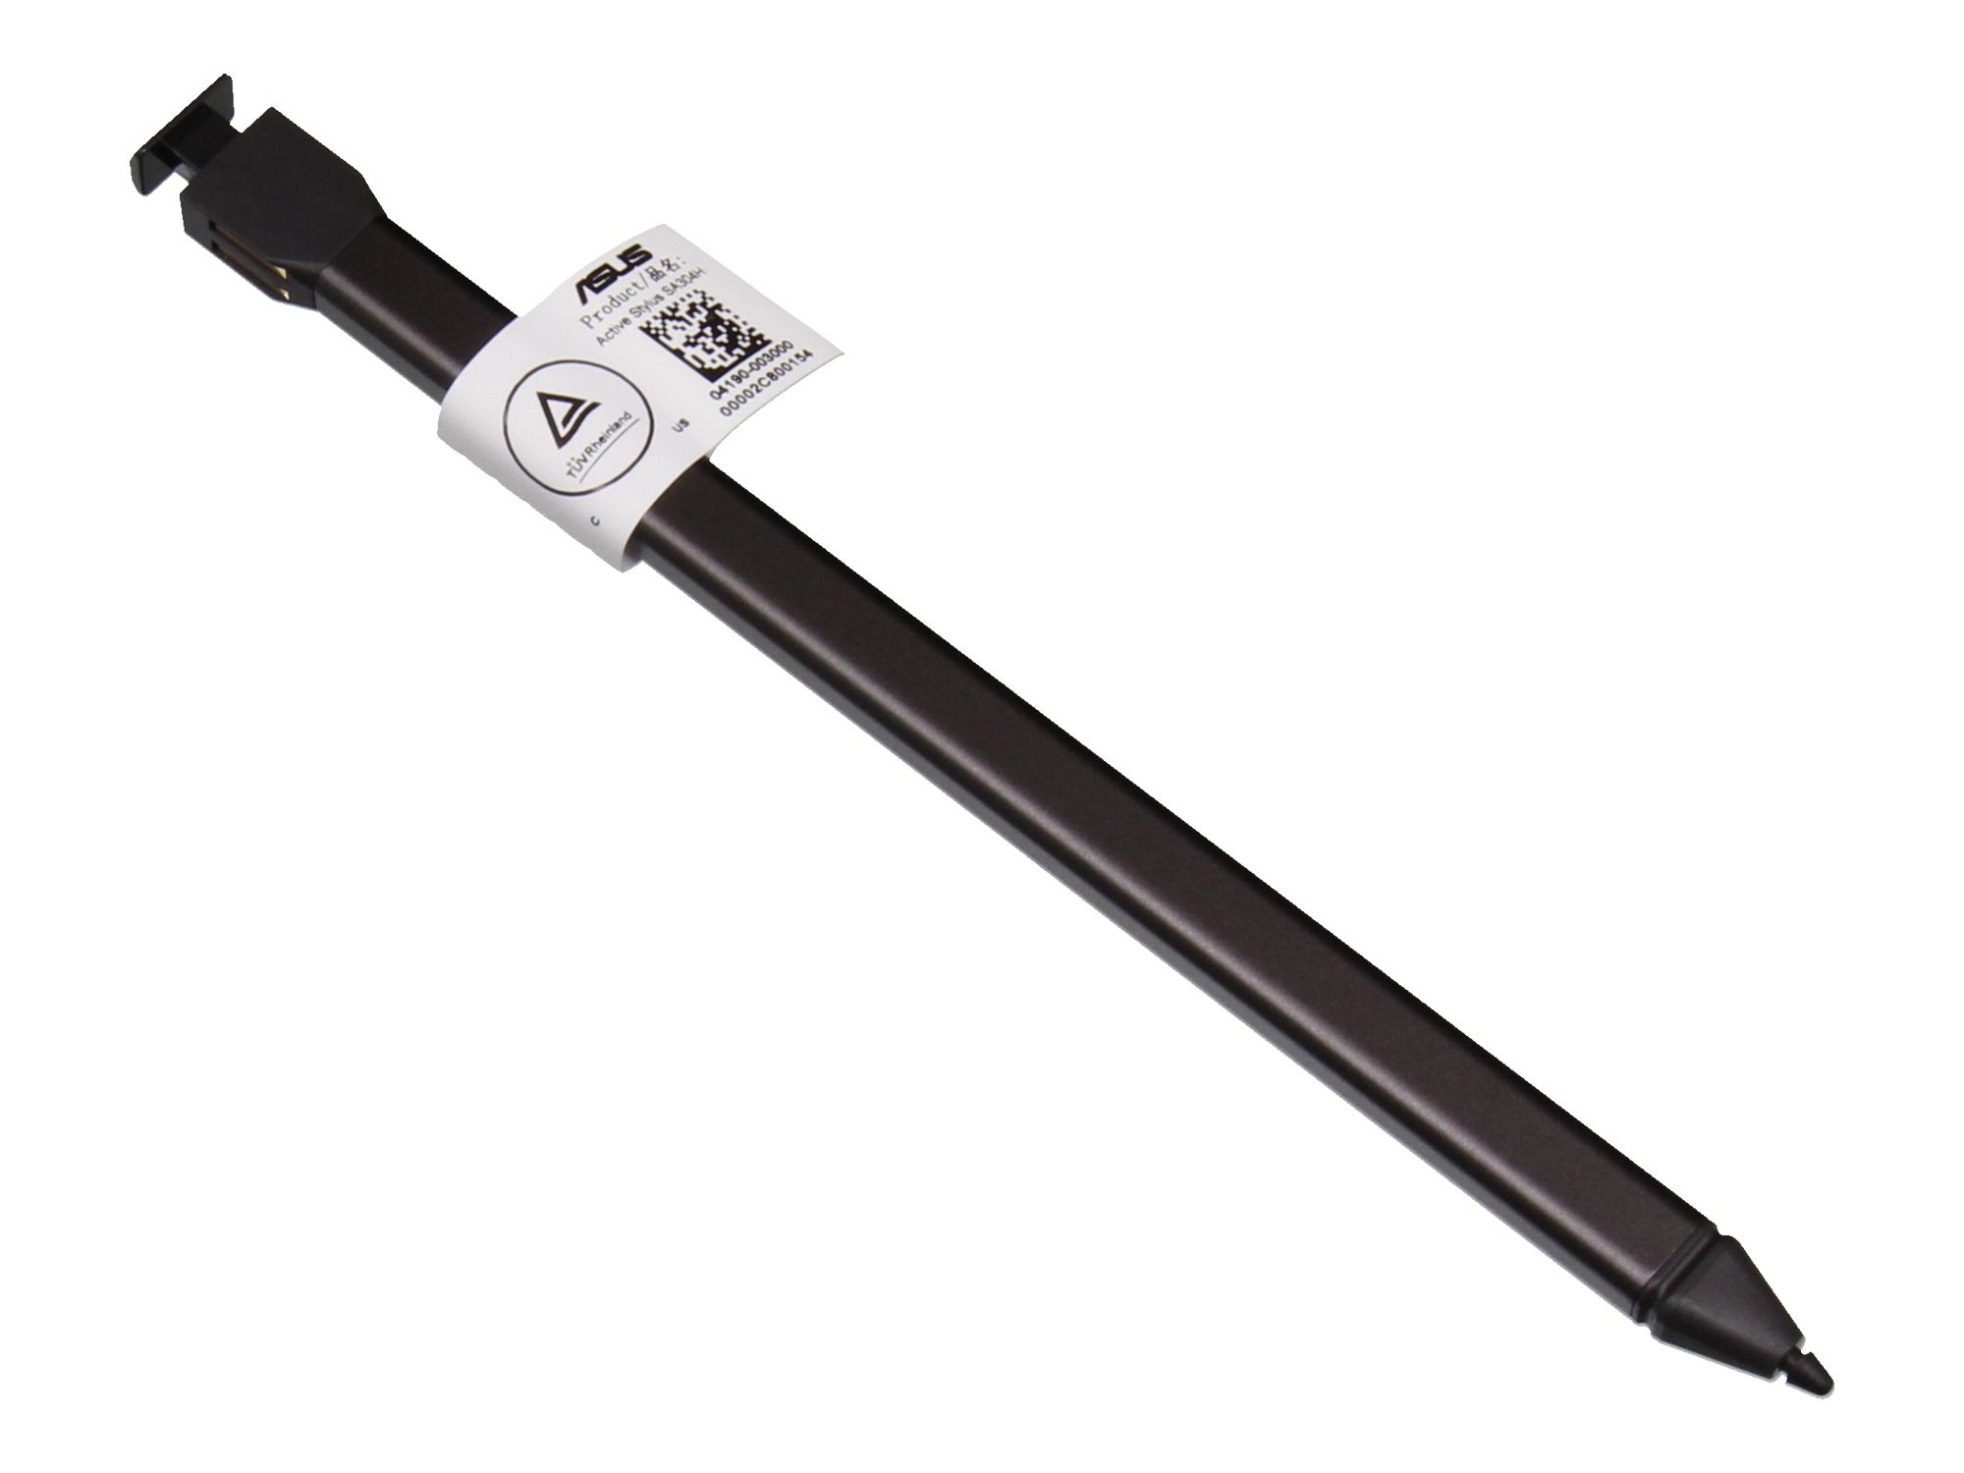 Asus SA304H Stylus Pen